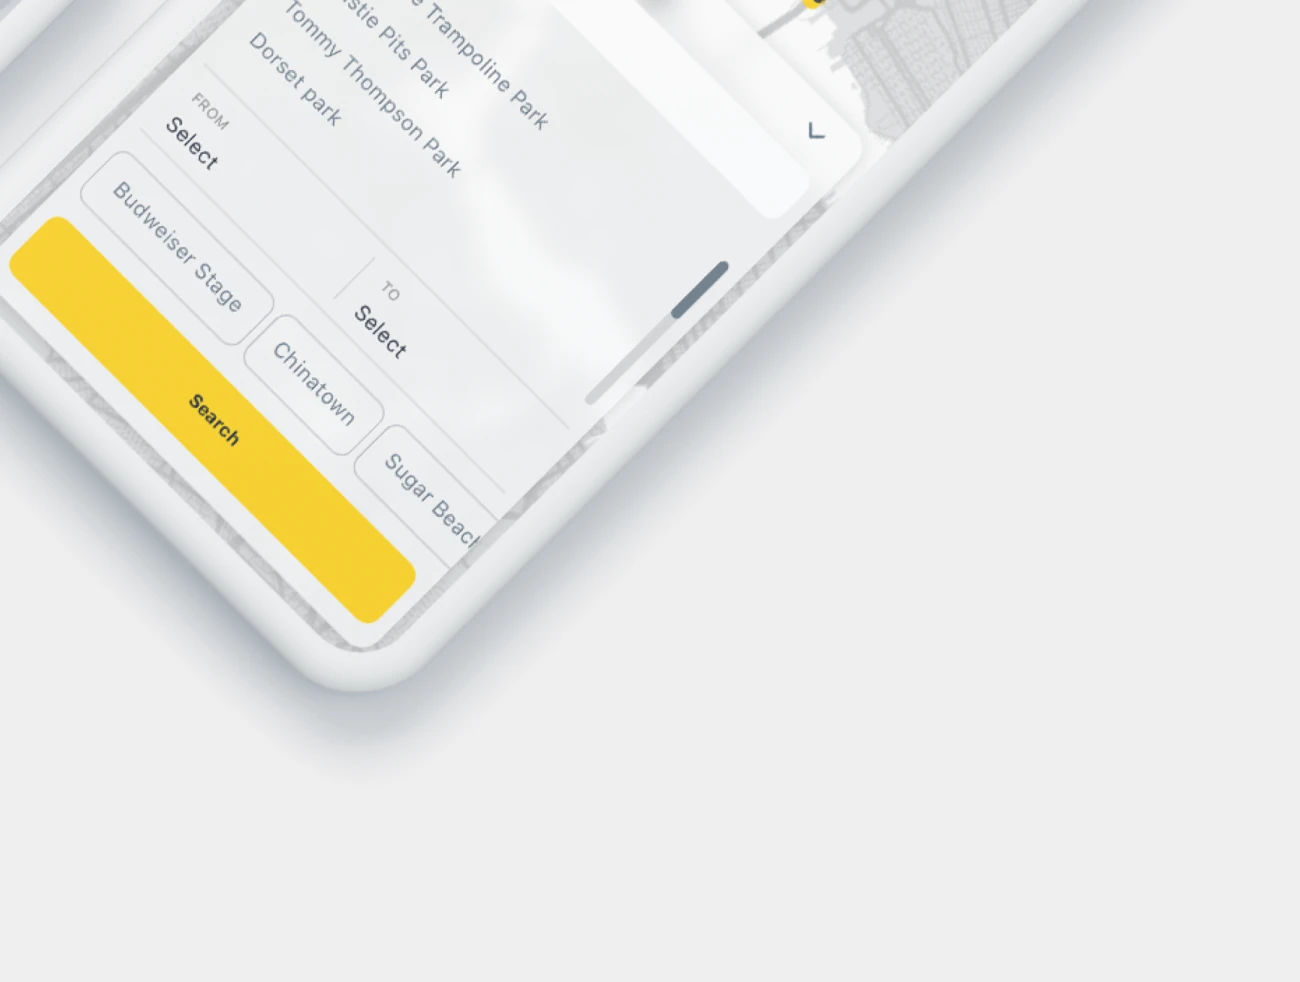 45屏打车应用手机套件素材下载 Cabbo – Taxi Ui Kit Mobile App .sketch .xd .figma插图19